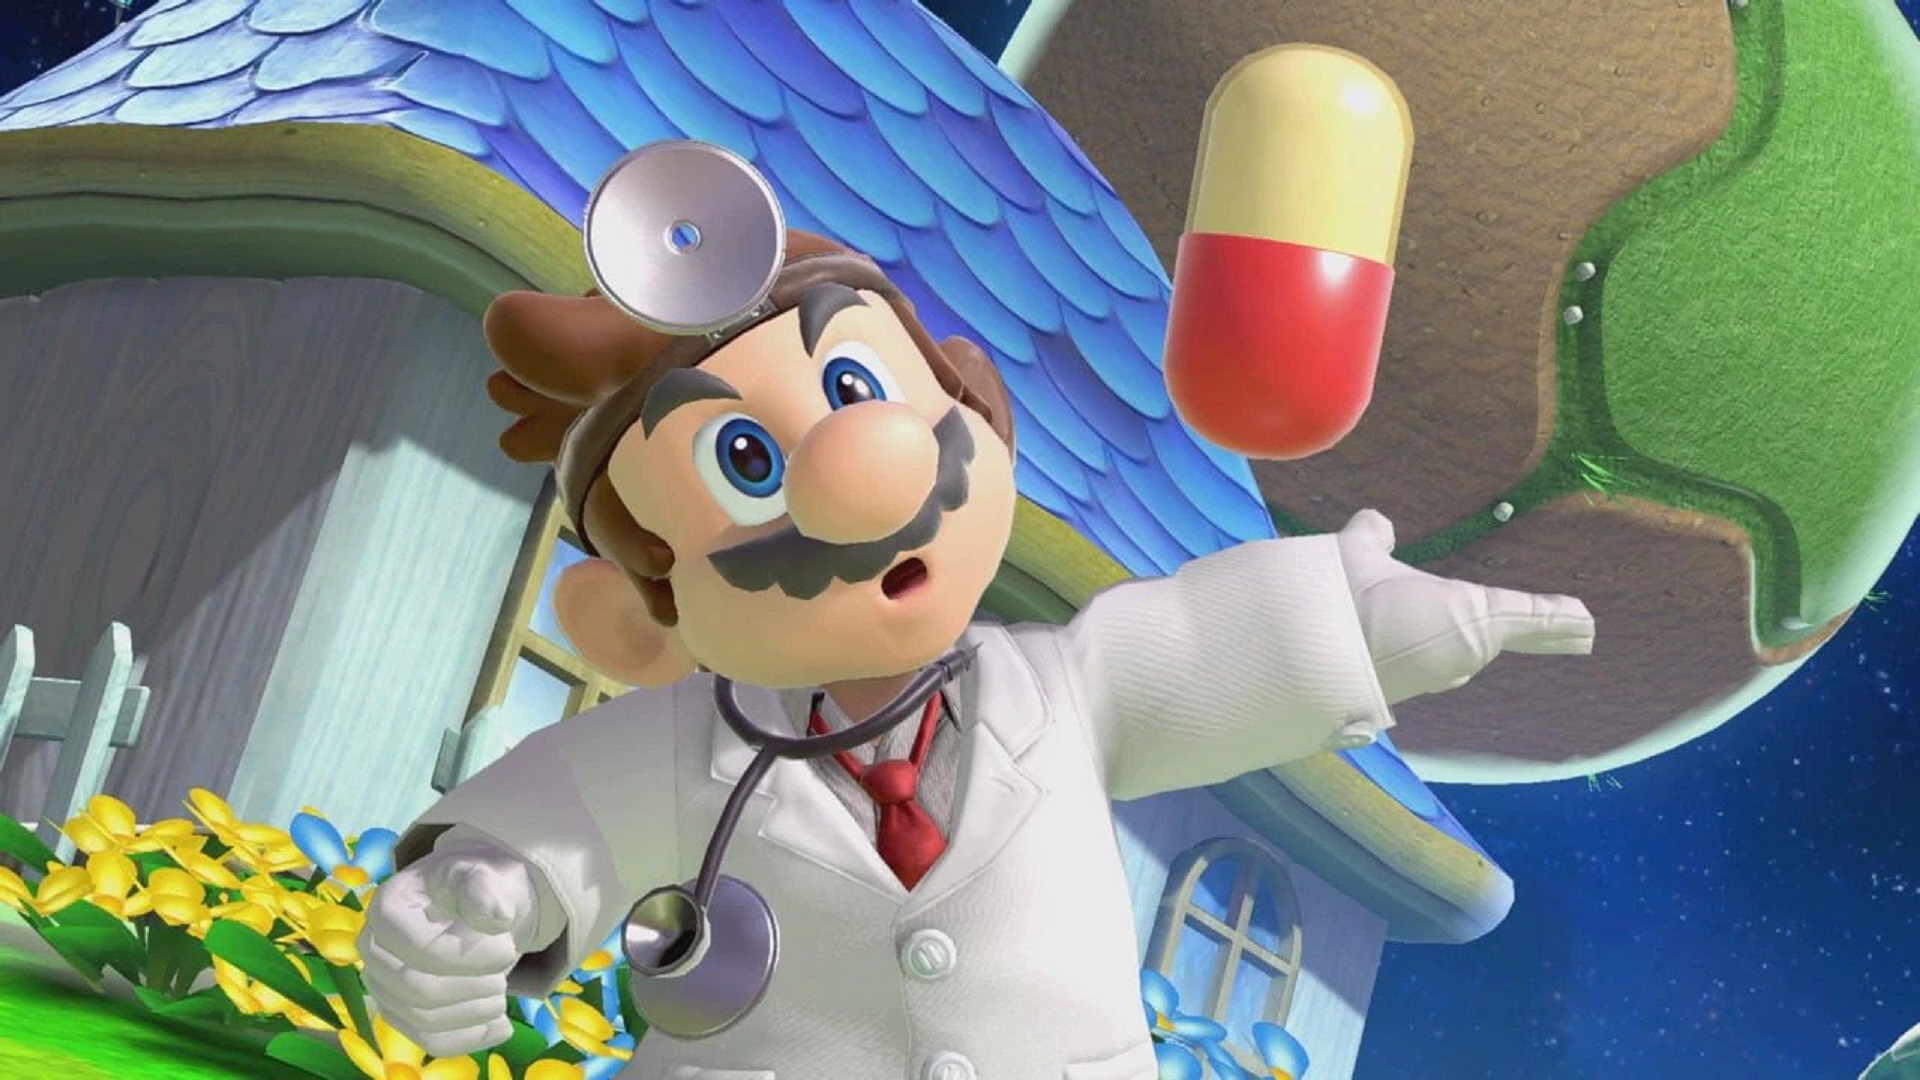 Dr. Mario in Smash Ultimate